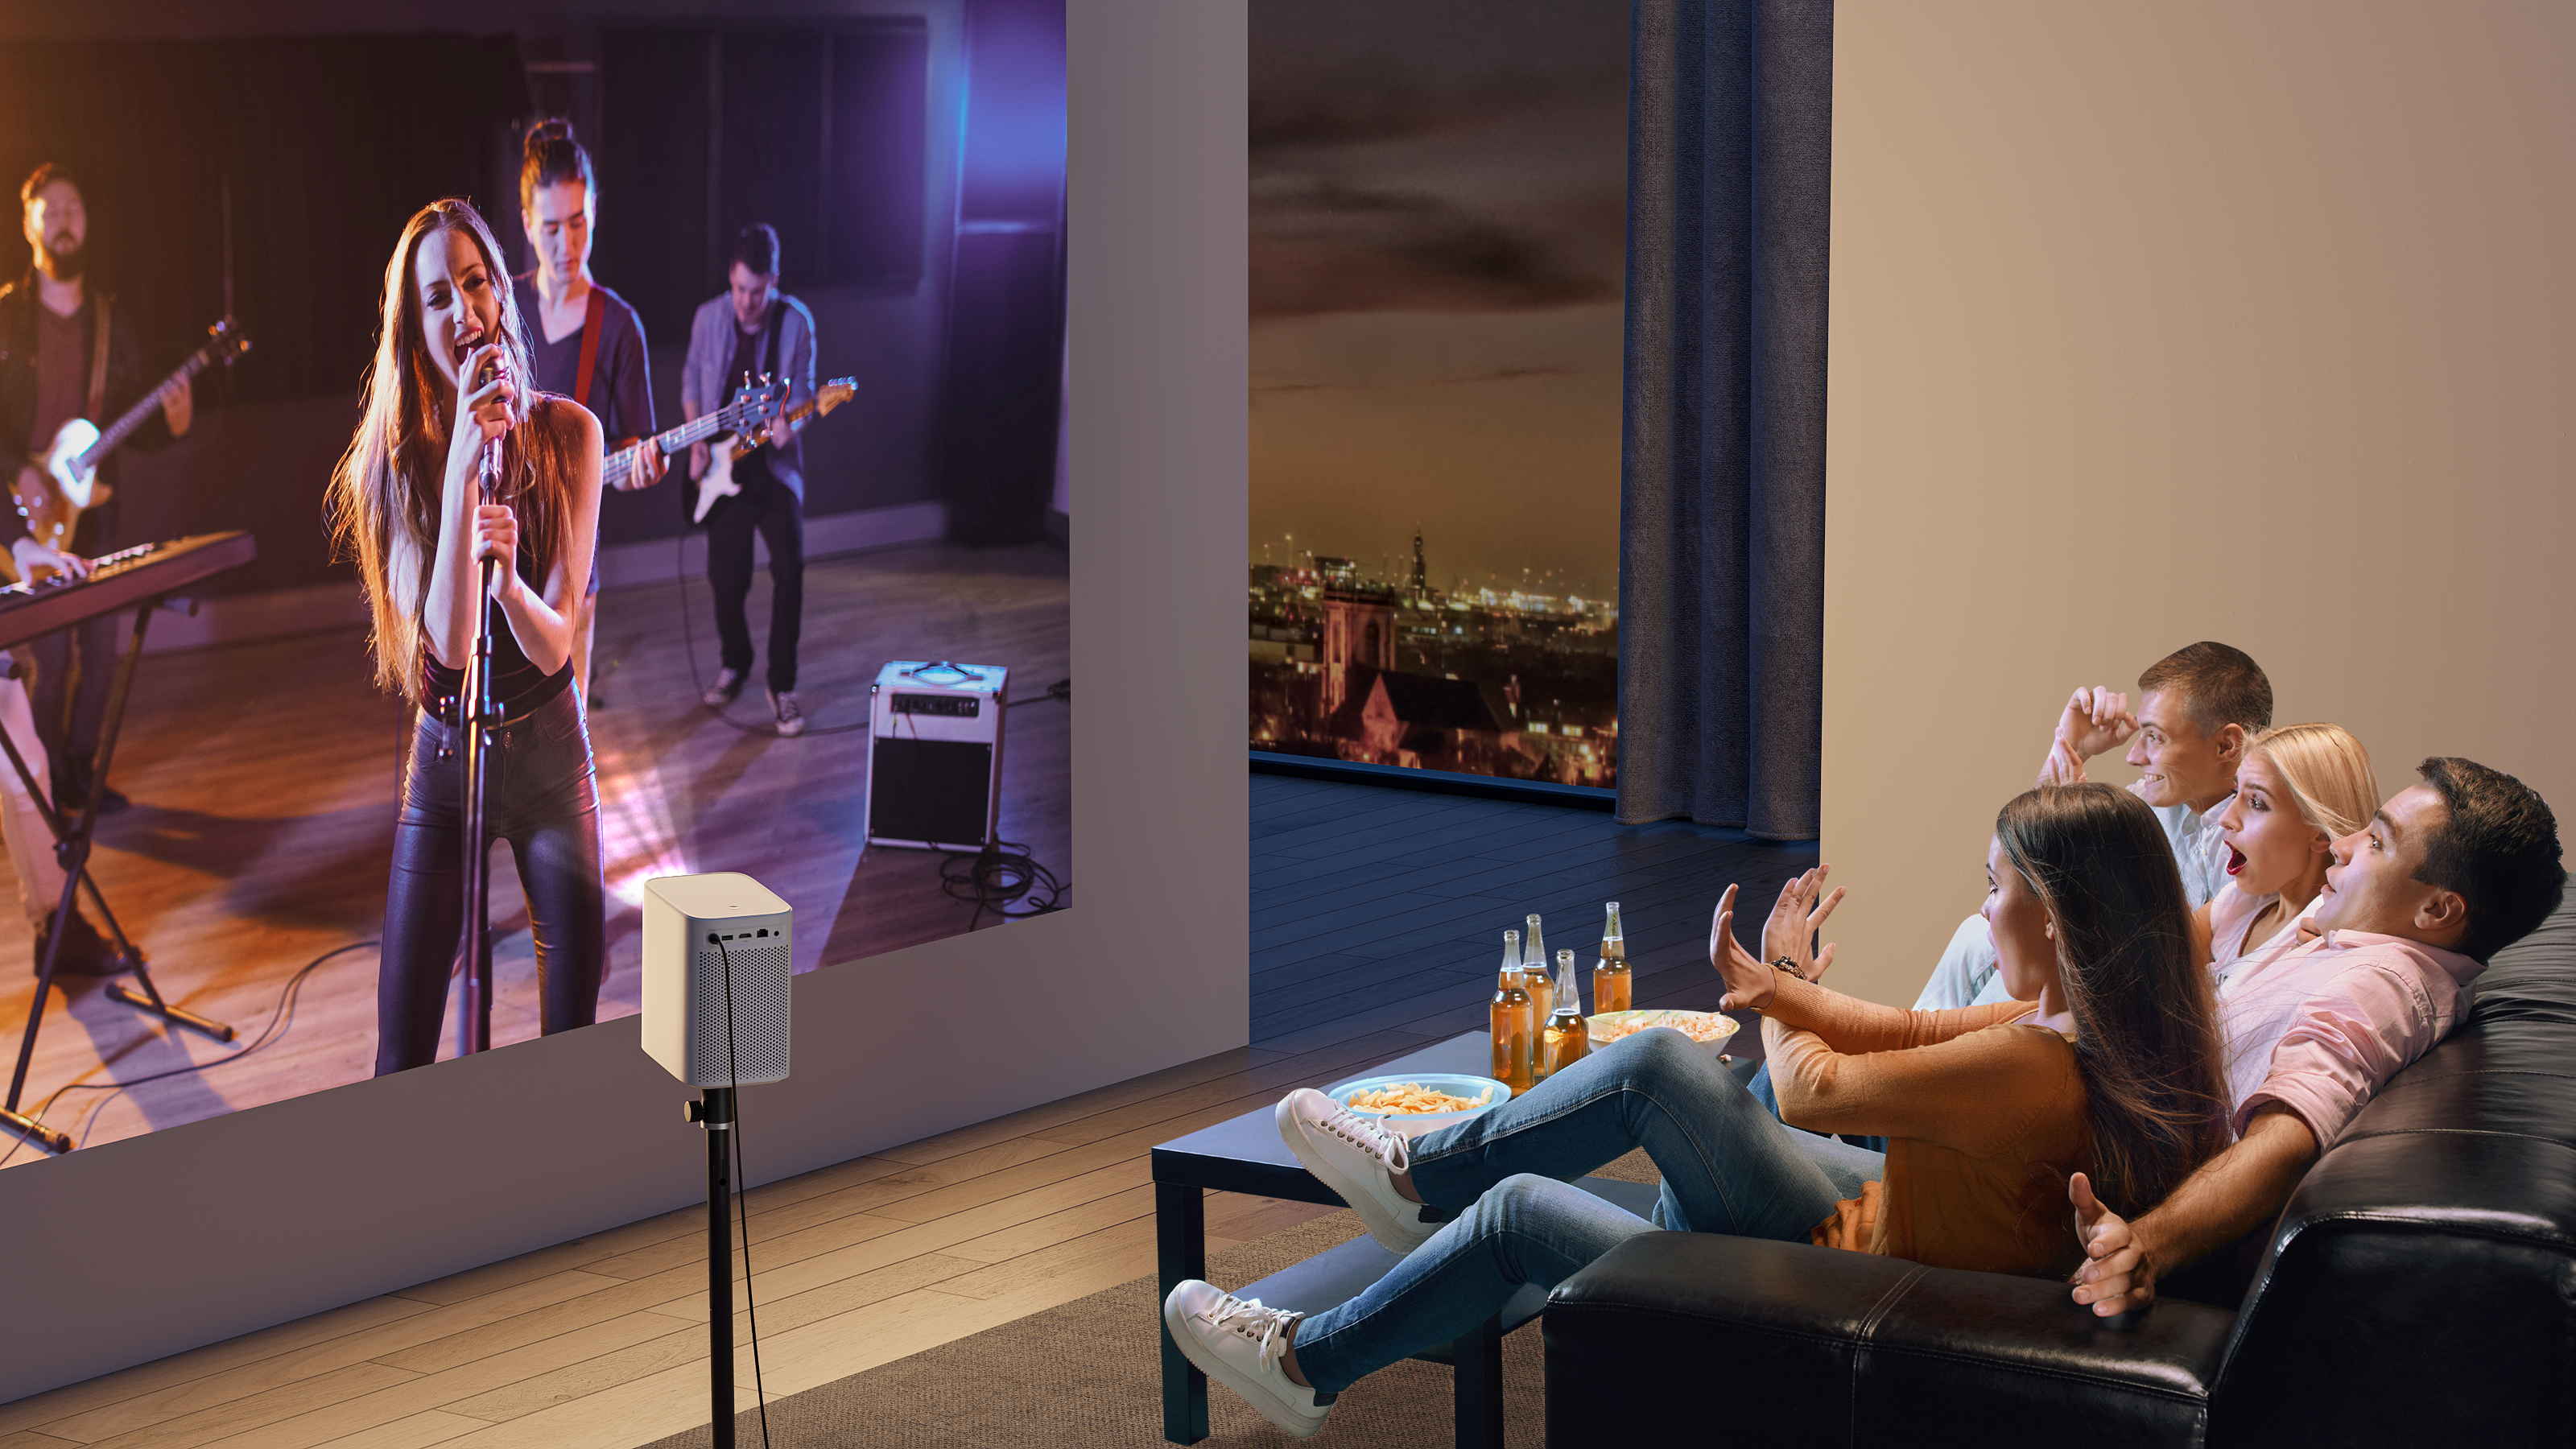 Этот дешевый HD-проектор может стать бюджетным обновлением домашнего кинотеатра, которое вам нужно.